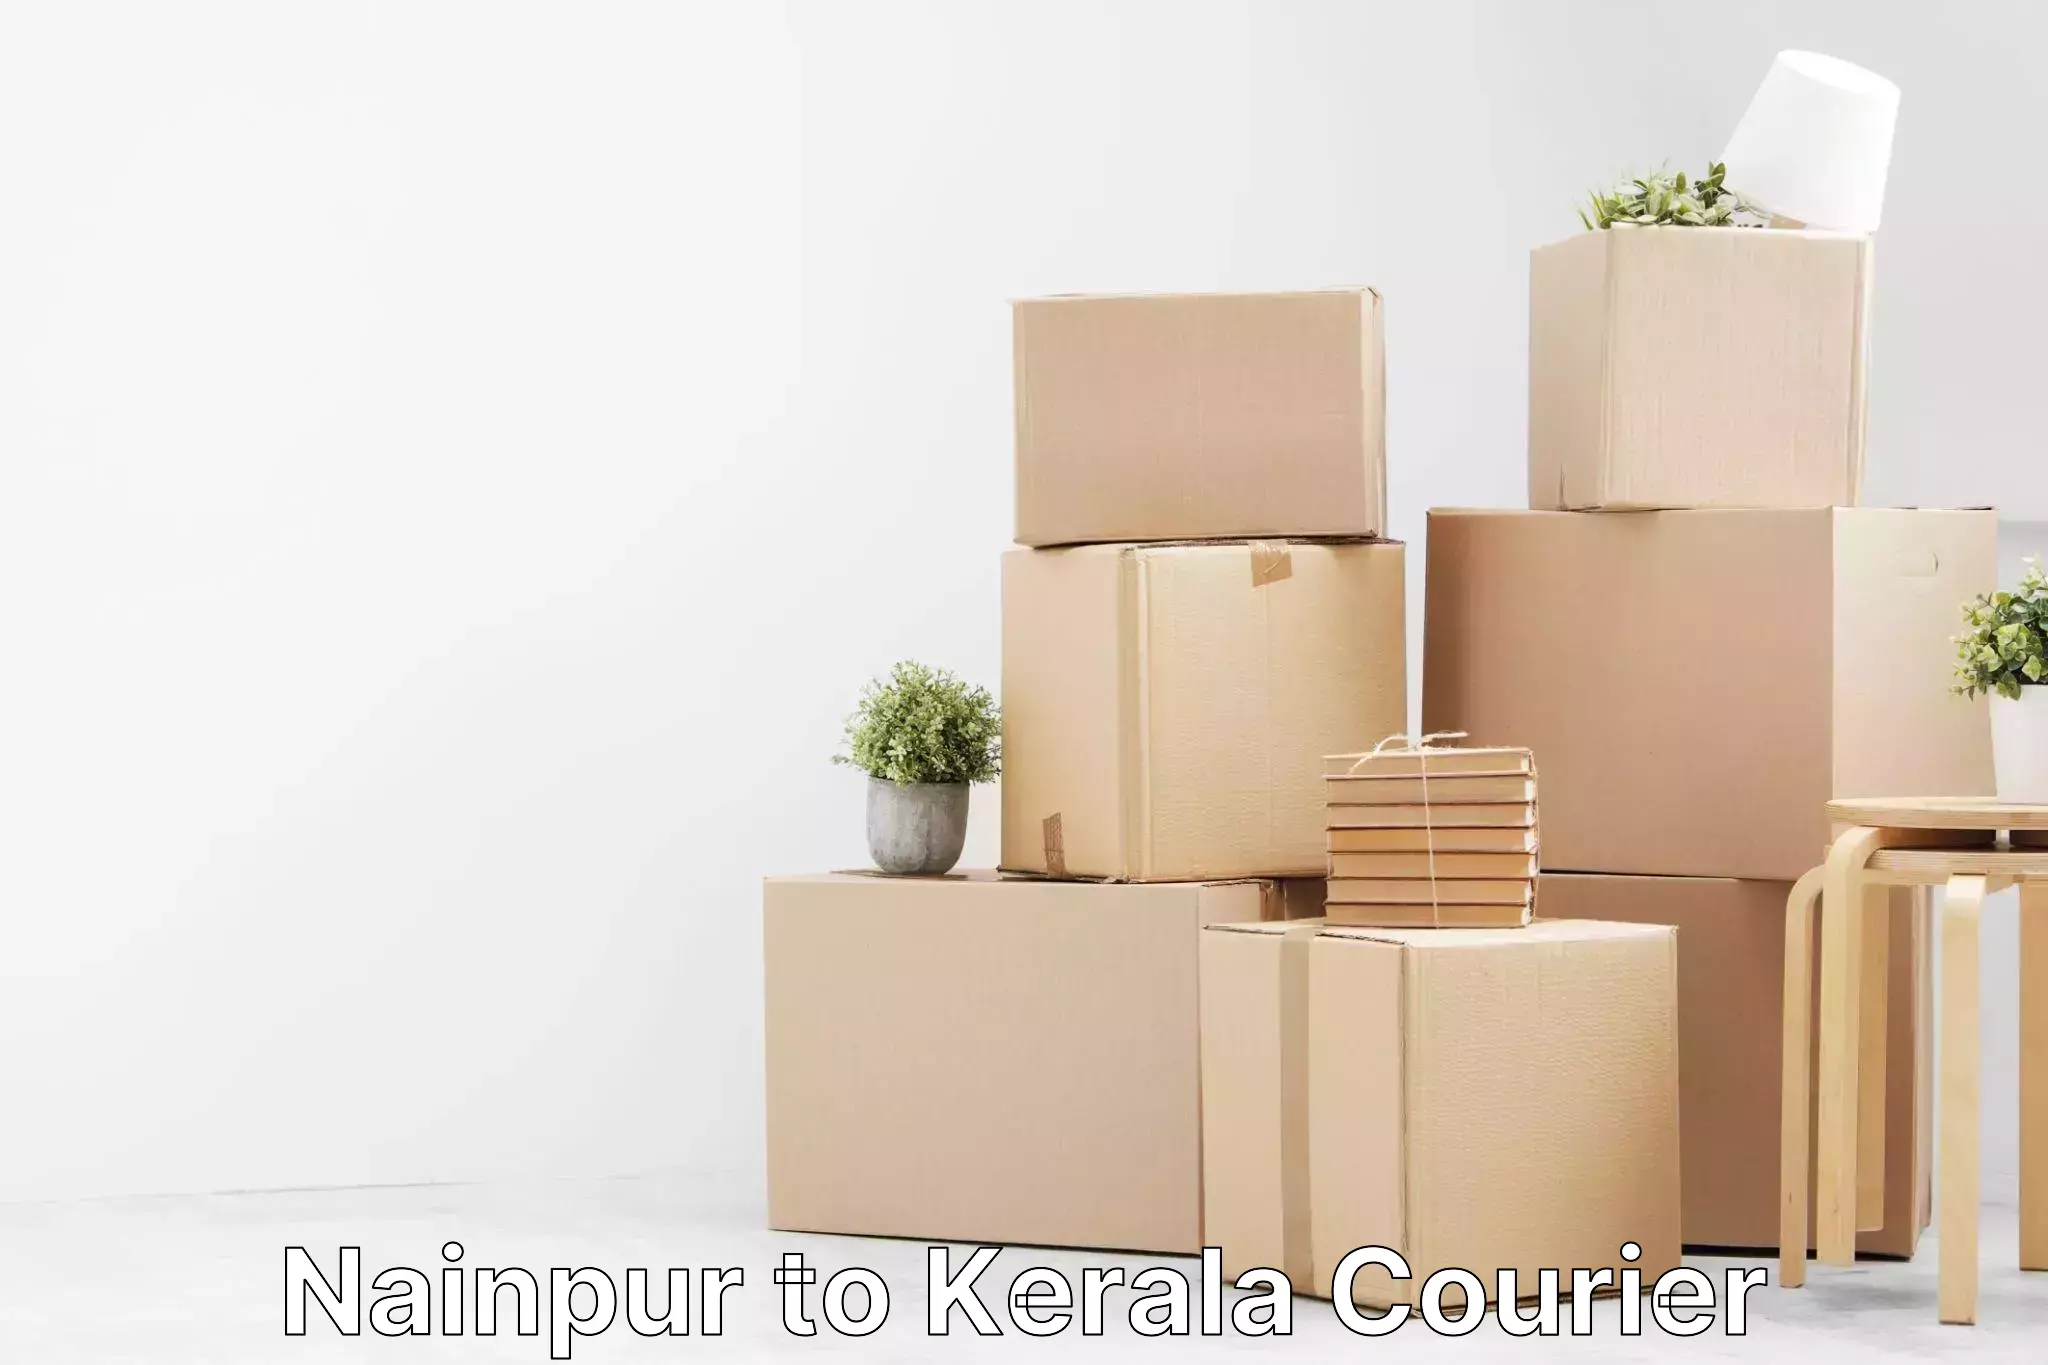 Smart shipping technology Nainpur to Kerala